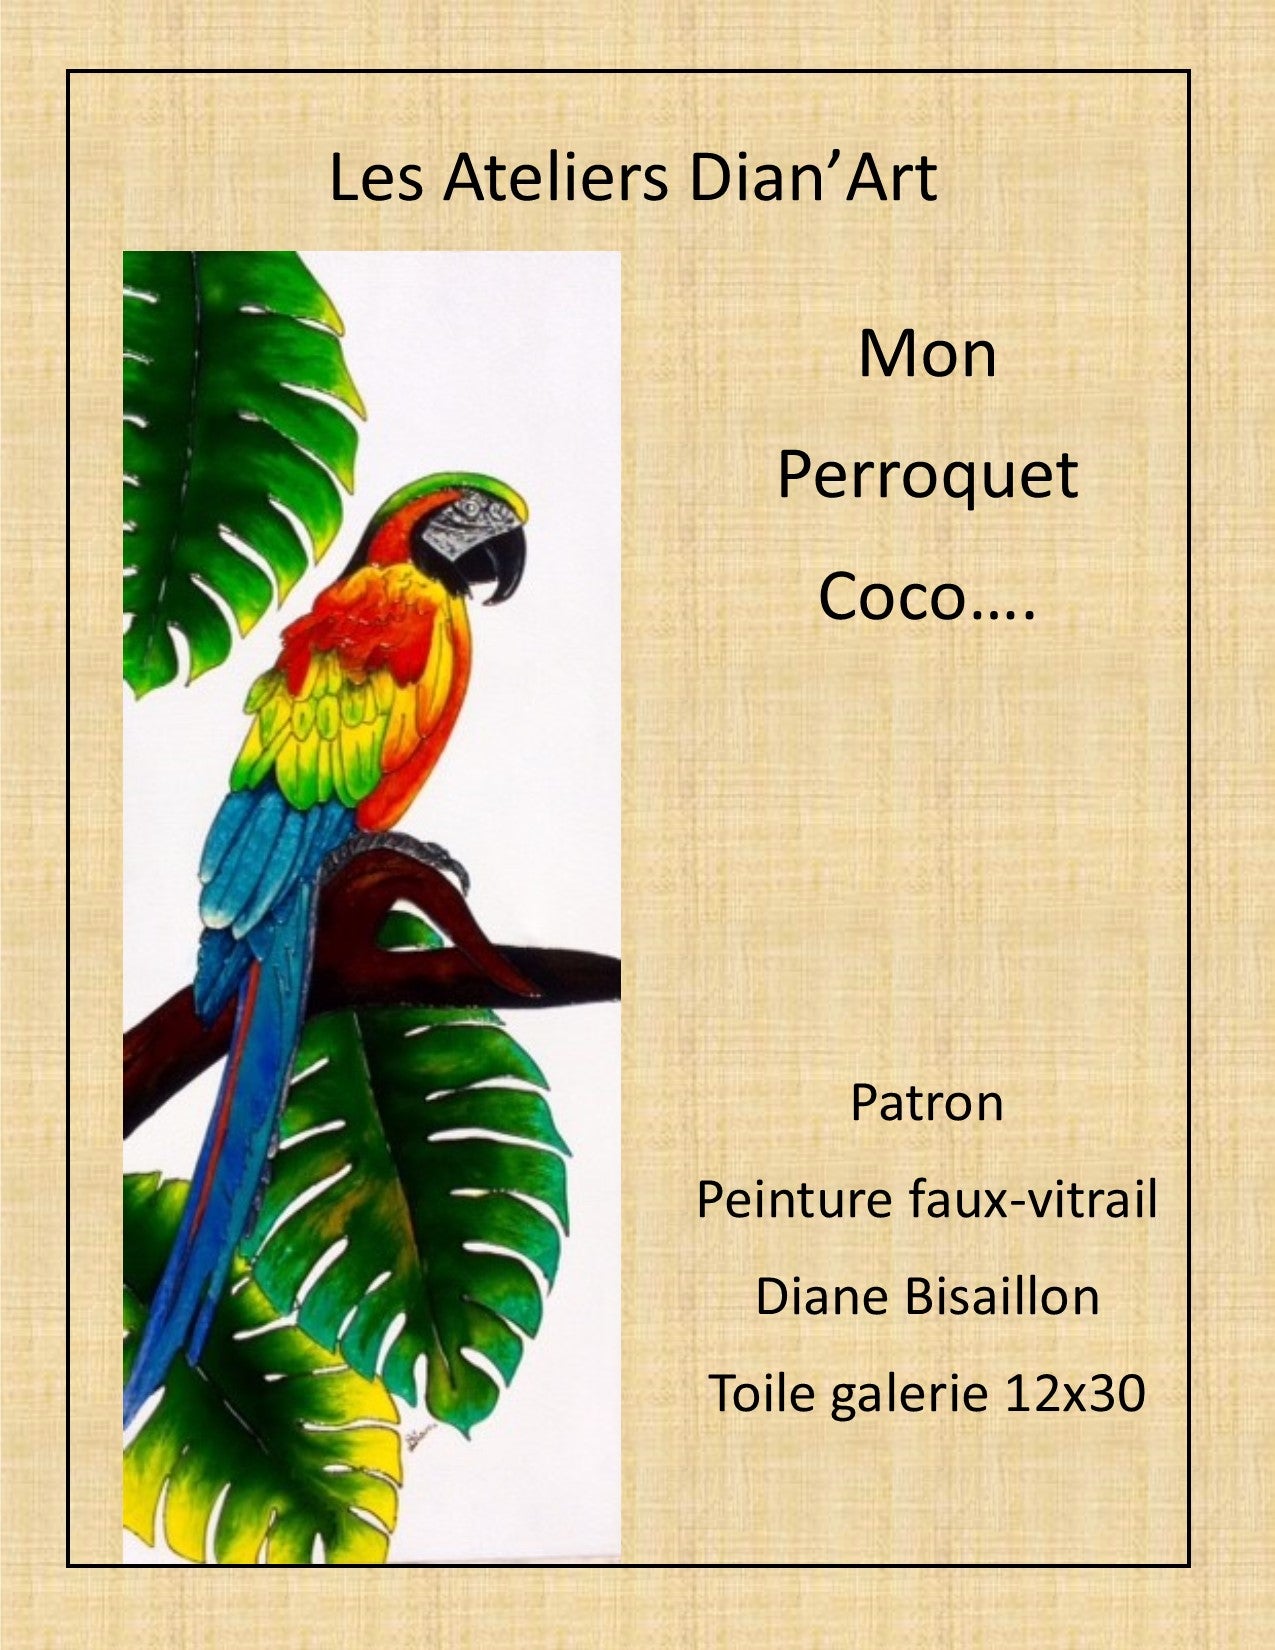 Coco...Le Perroquet